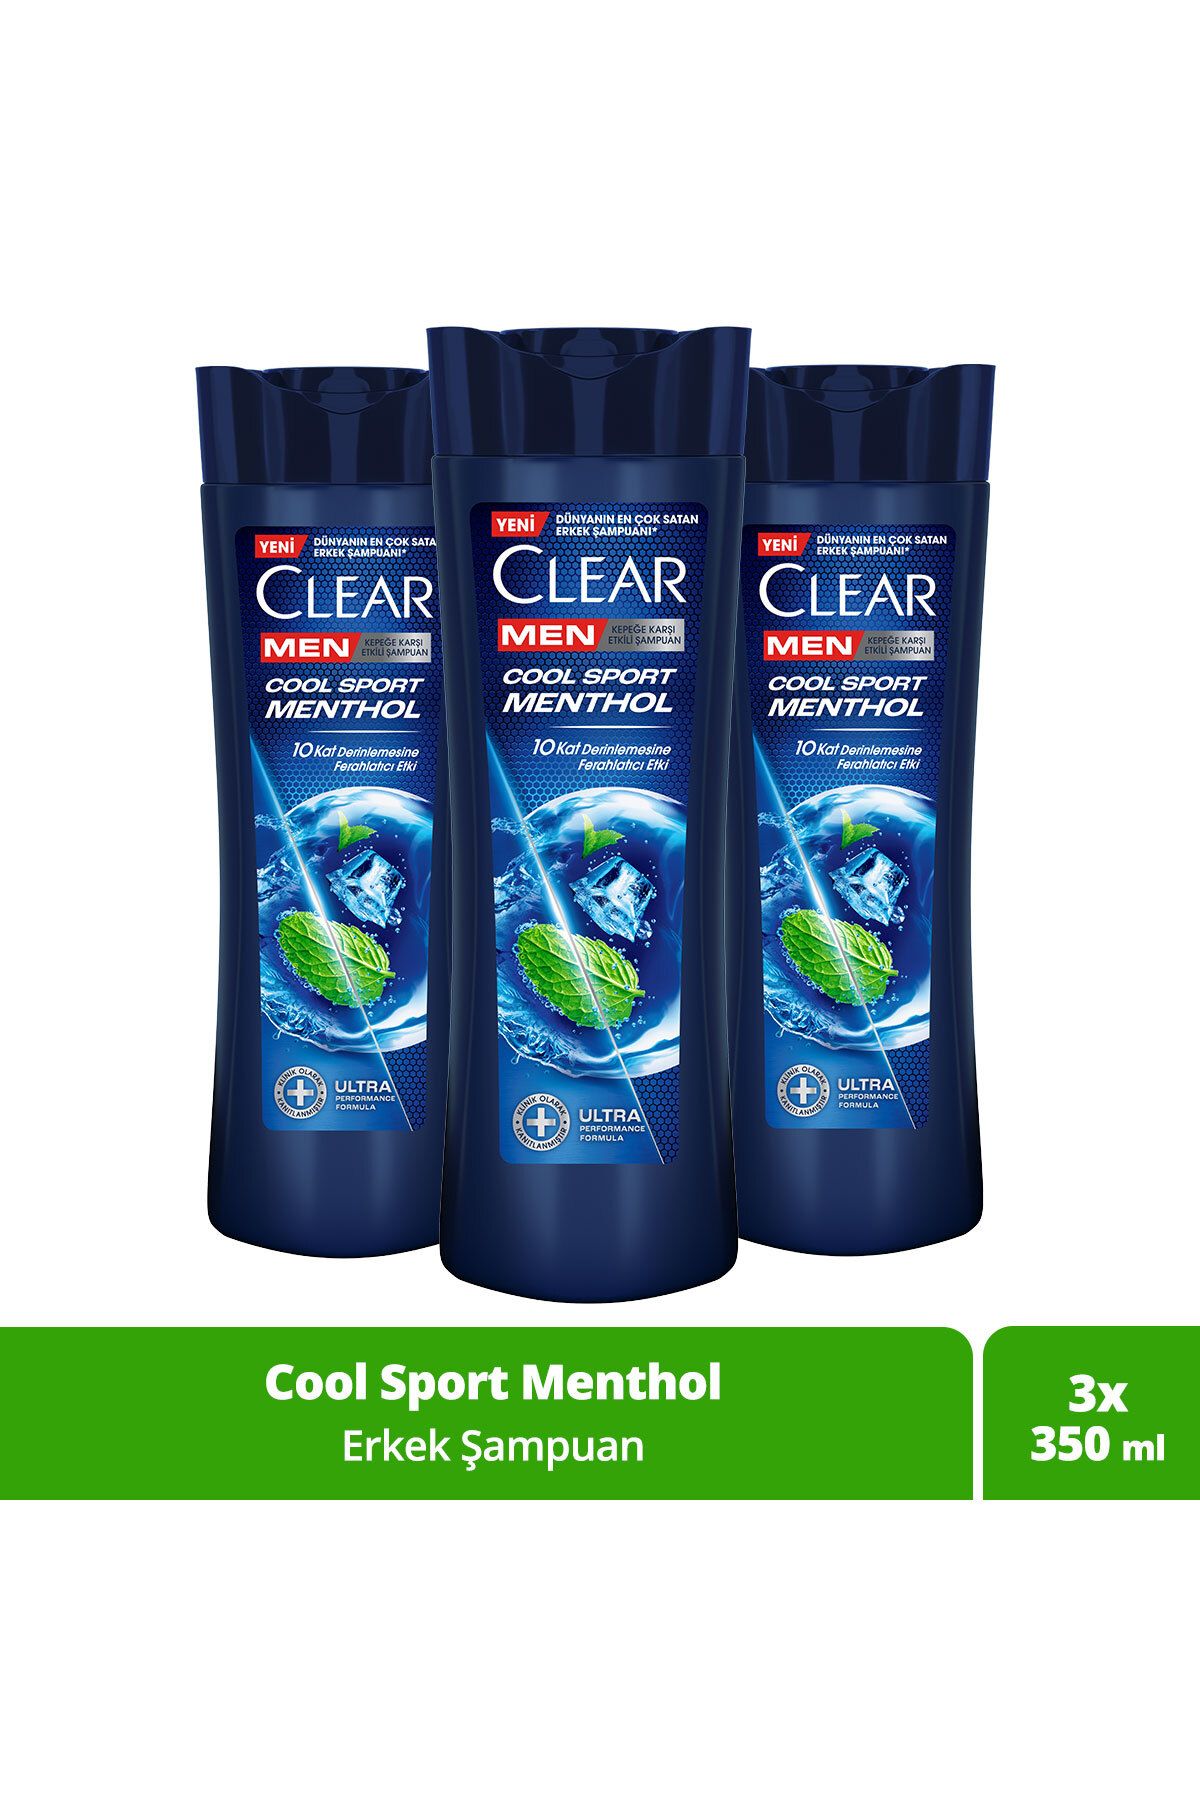 Clear Men Kepeğe Karşı Etkili Şampuan Cool Sport Menthol Ferahlatıcı Mentol Etkisi 350 ml x 3 Adet